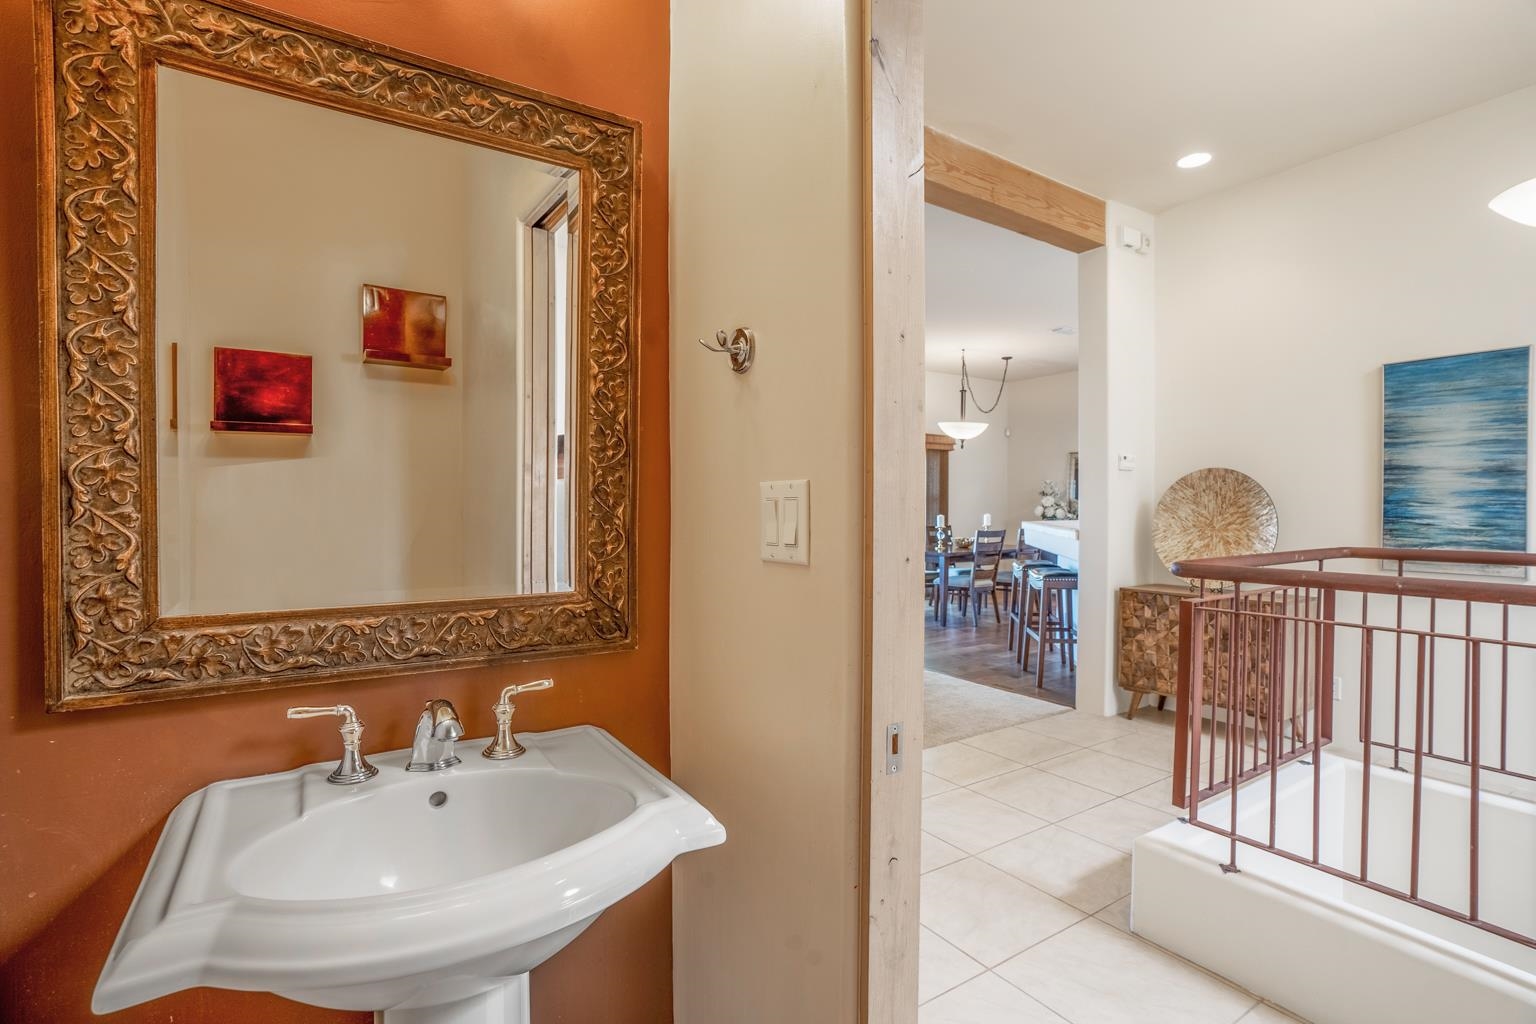 1620 Villa Strada, Santa Fe, New Mexico 87506, 3 Bedrooms Bedrooms, ,4 BathroomsBathrooms,Residential,For Sale,1620 Villa Strada,202201431